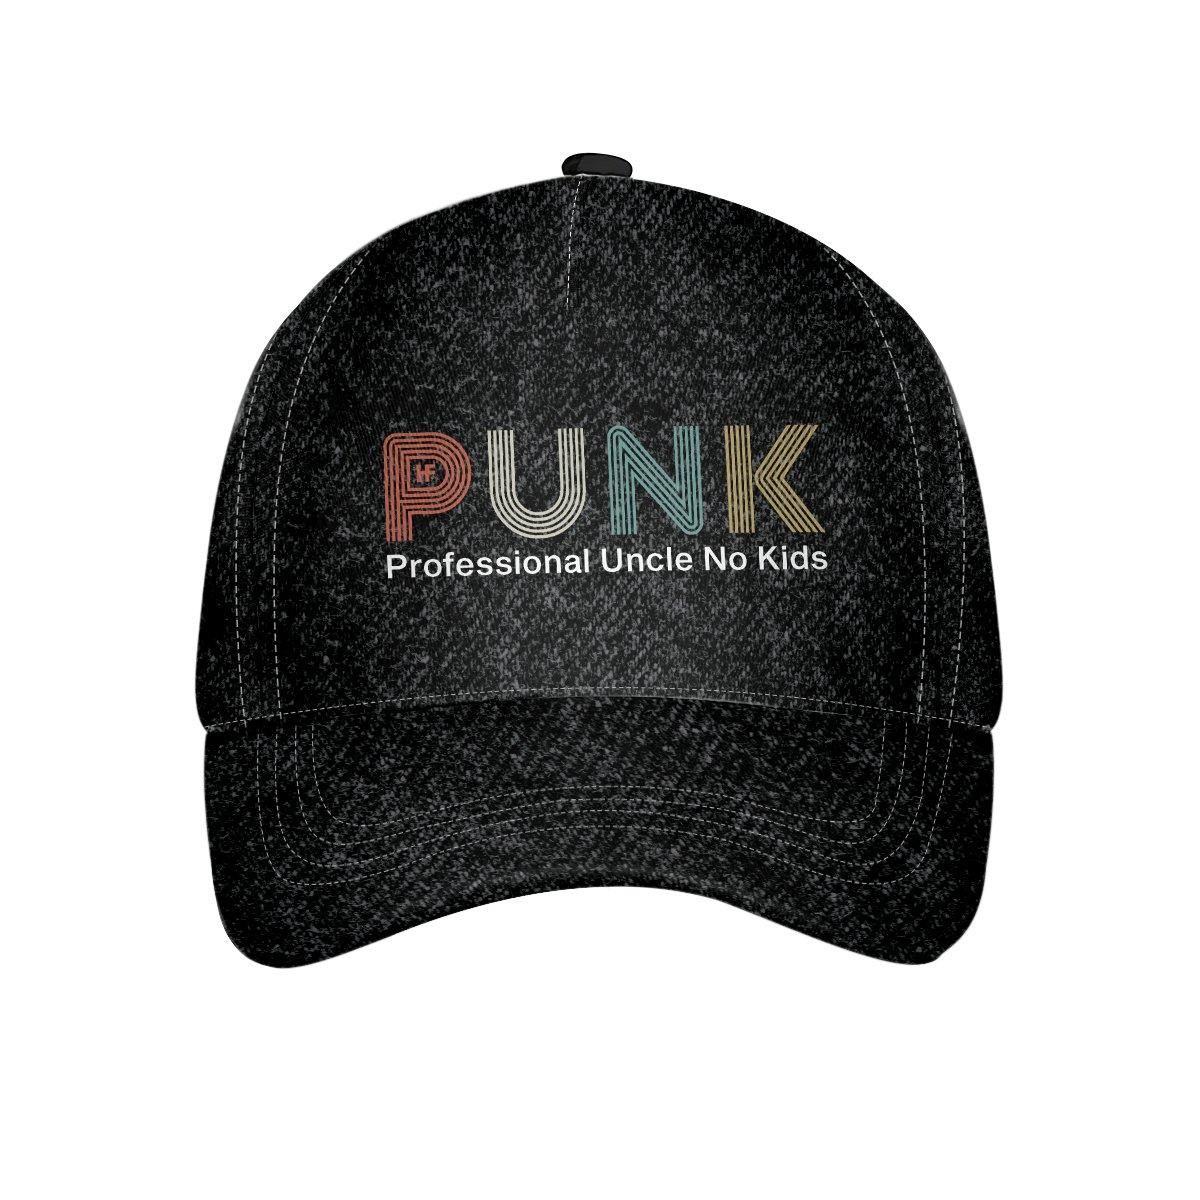 Punk- Professional Uncle No Kids Cap